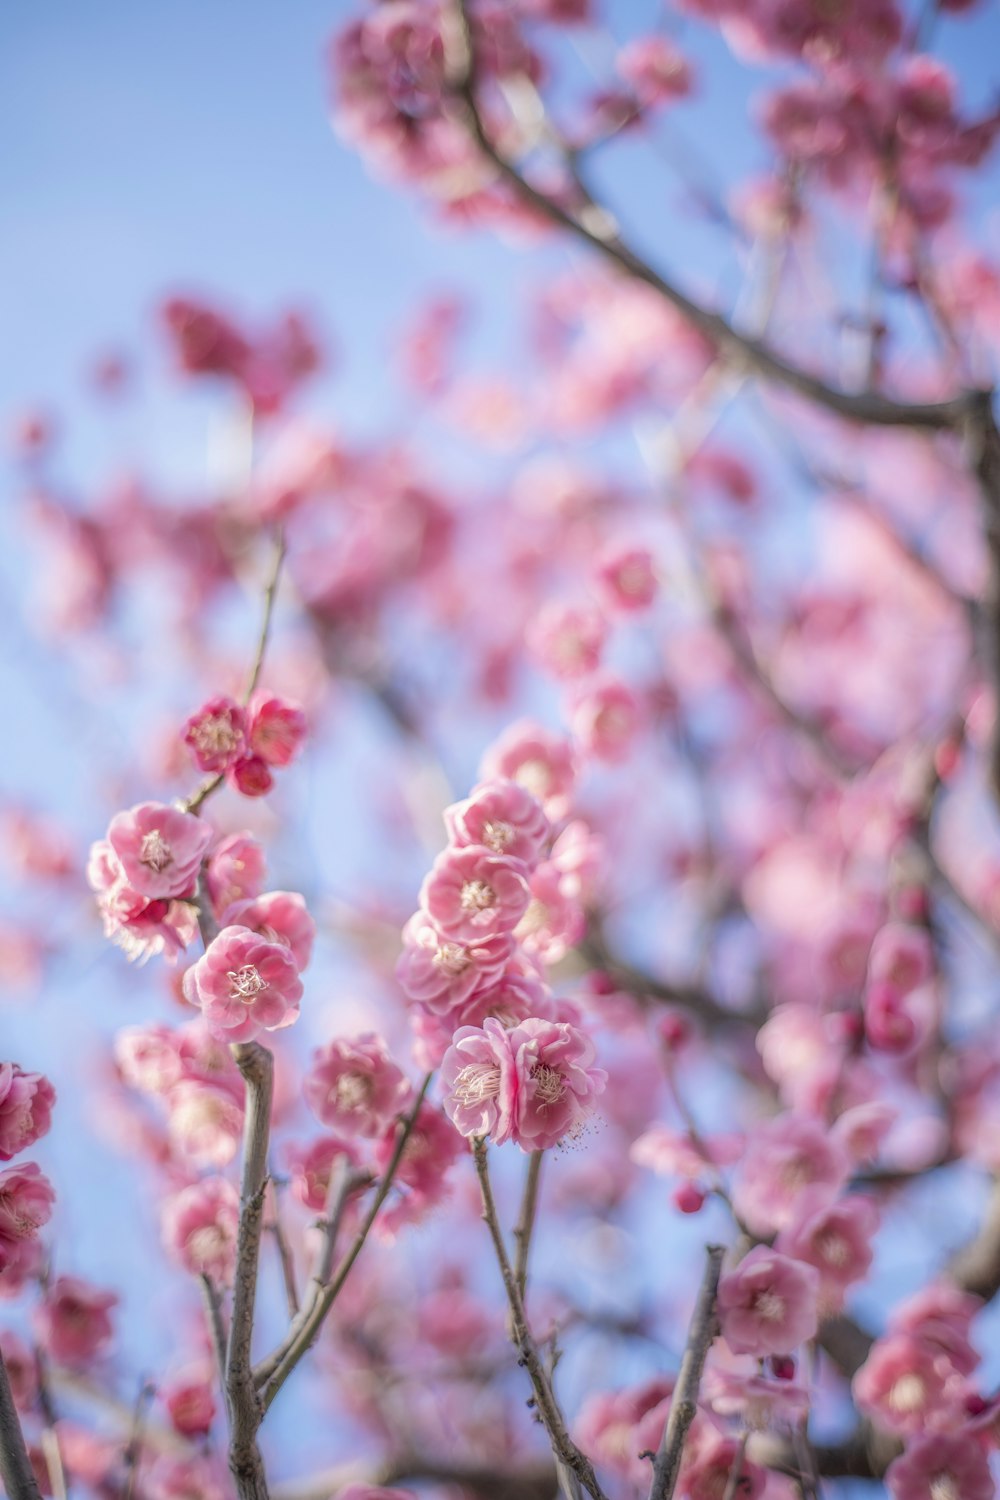 Las flores rosadas están floreciendo en un árbol